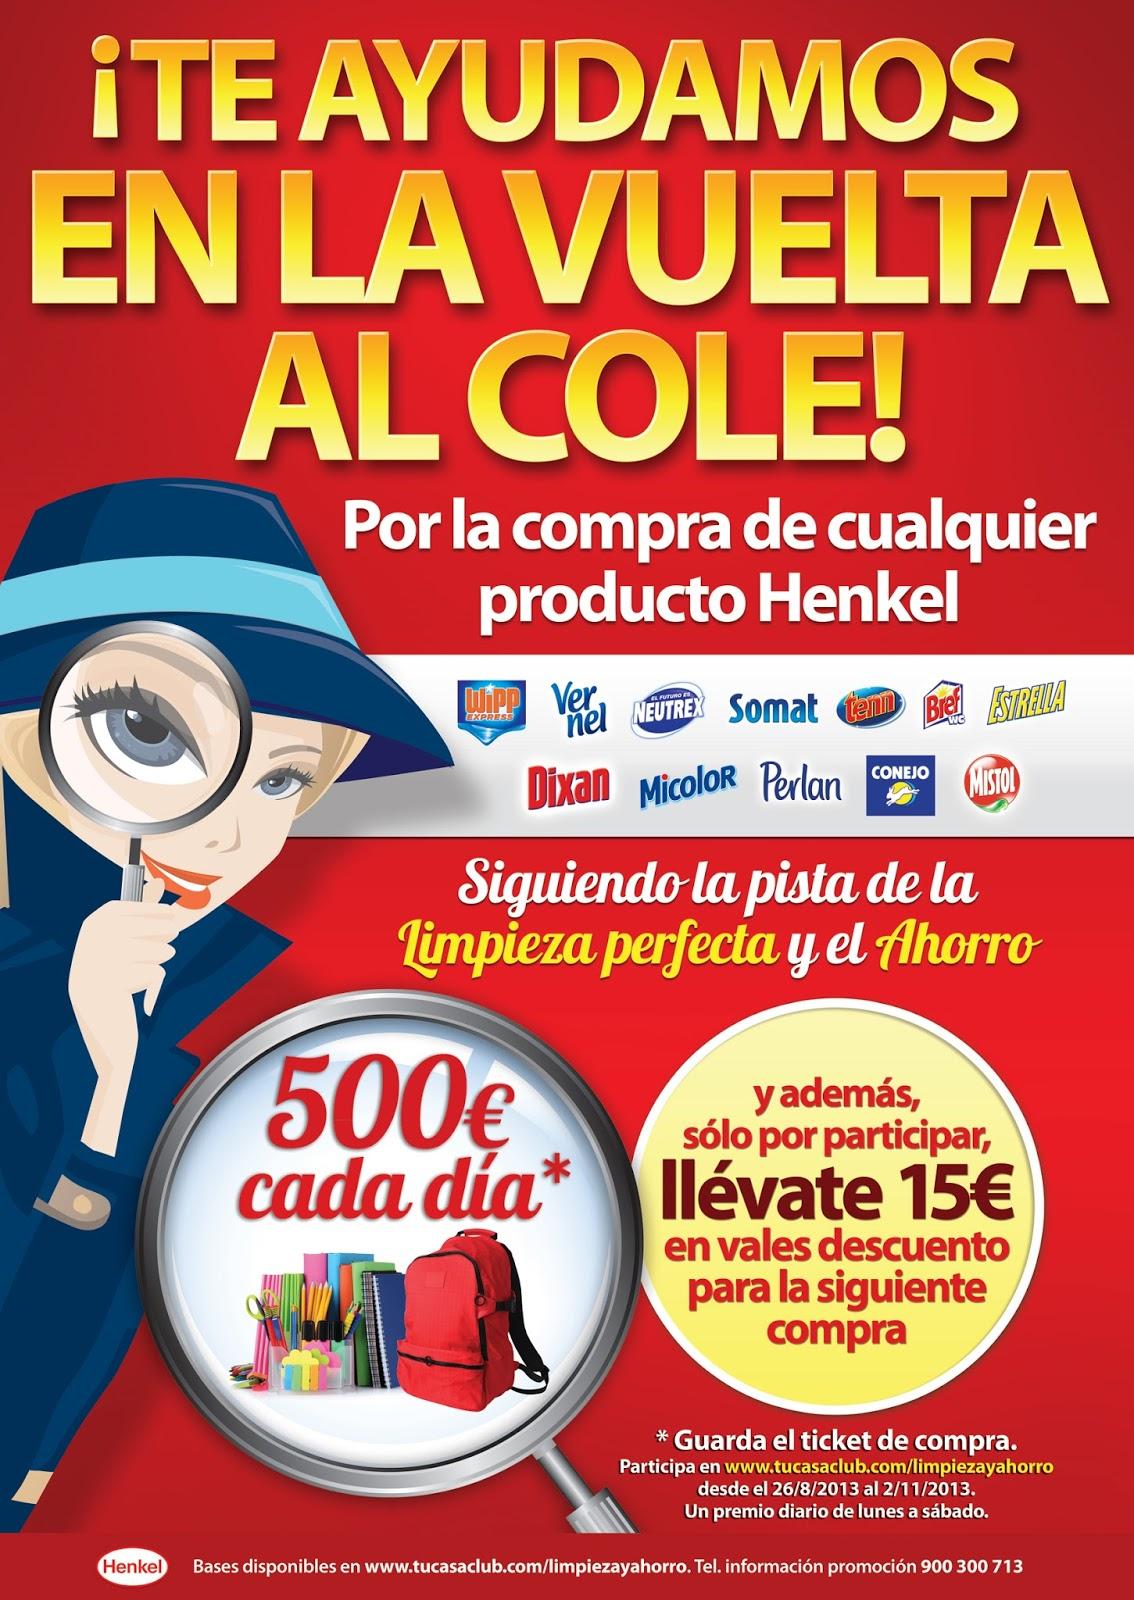 Henkel Ibérica ayuda a los hogares españoles en la vuelta al cole